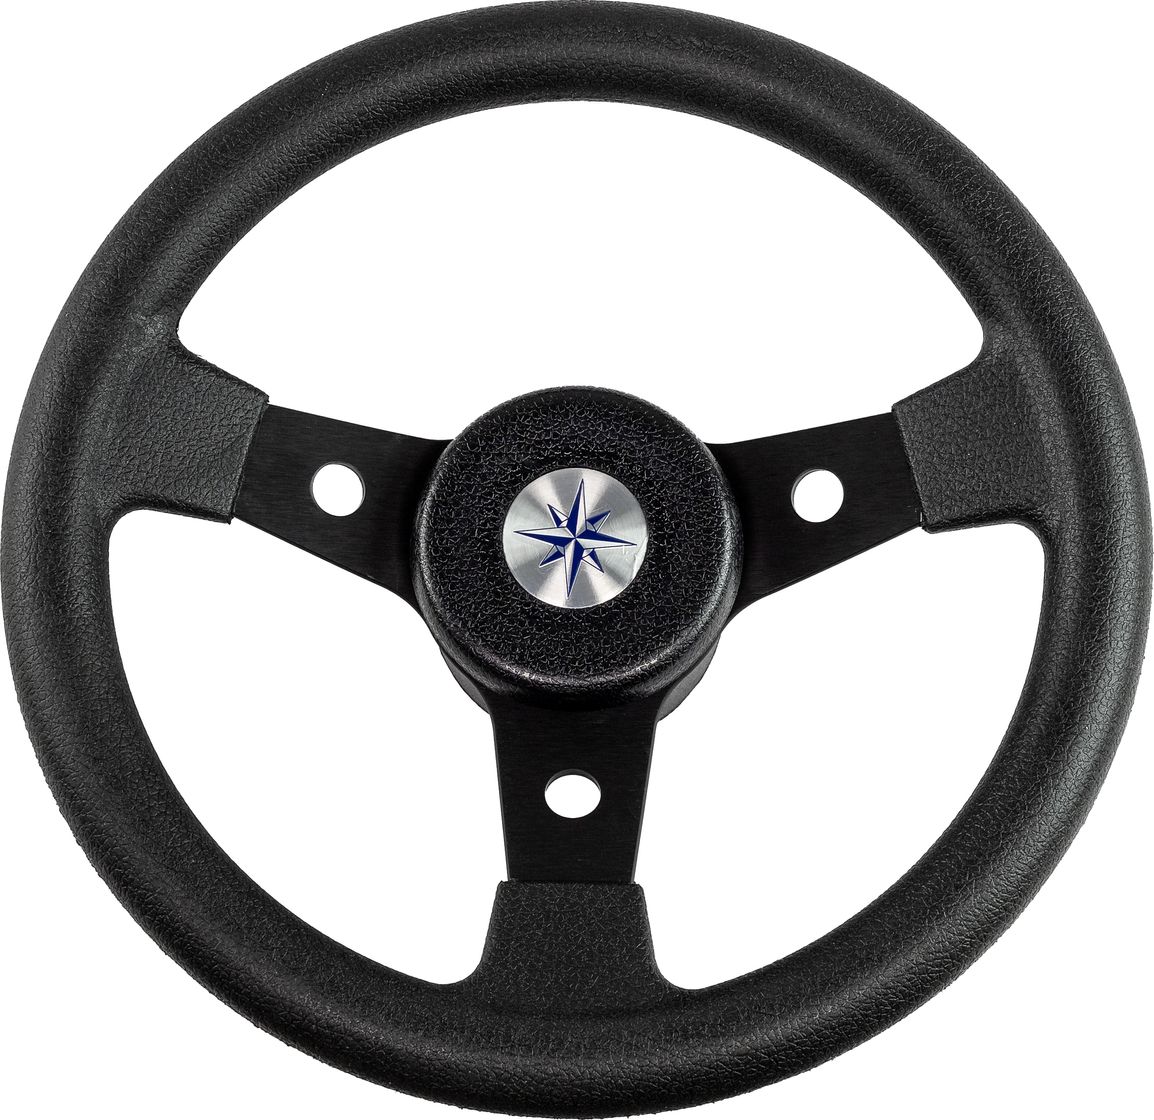 Рулевое колесо DELFINO обод и спицы черные д. 310 мм VN70104-01 рулевое колесо elba обод и спицы черные д 320 мм vn70312 01